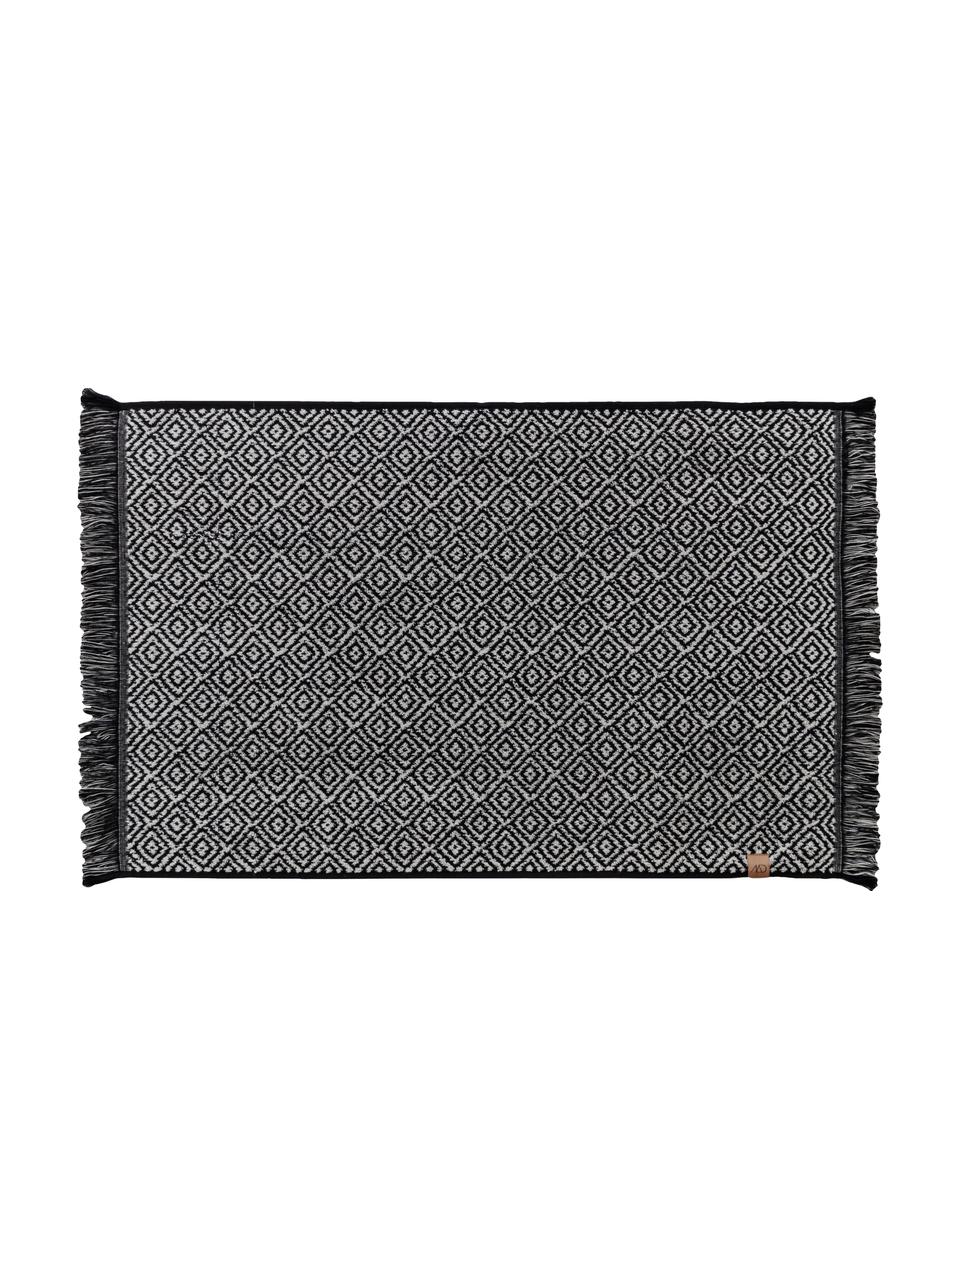 Tappeto bagno nero/bianco con motivo grafico Marocco, Cotone, Nero, bianco, Larg. 50 x Lung. 80 cm